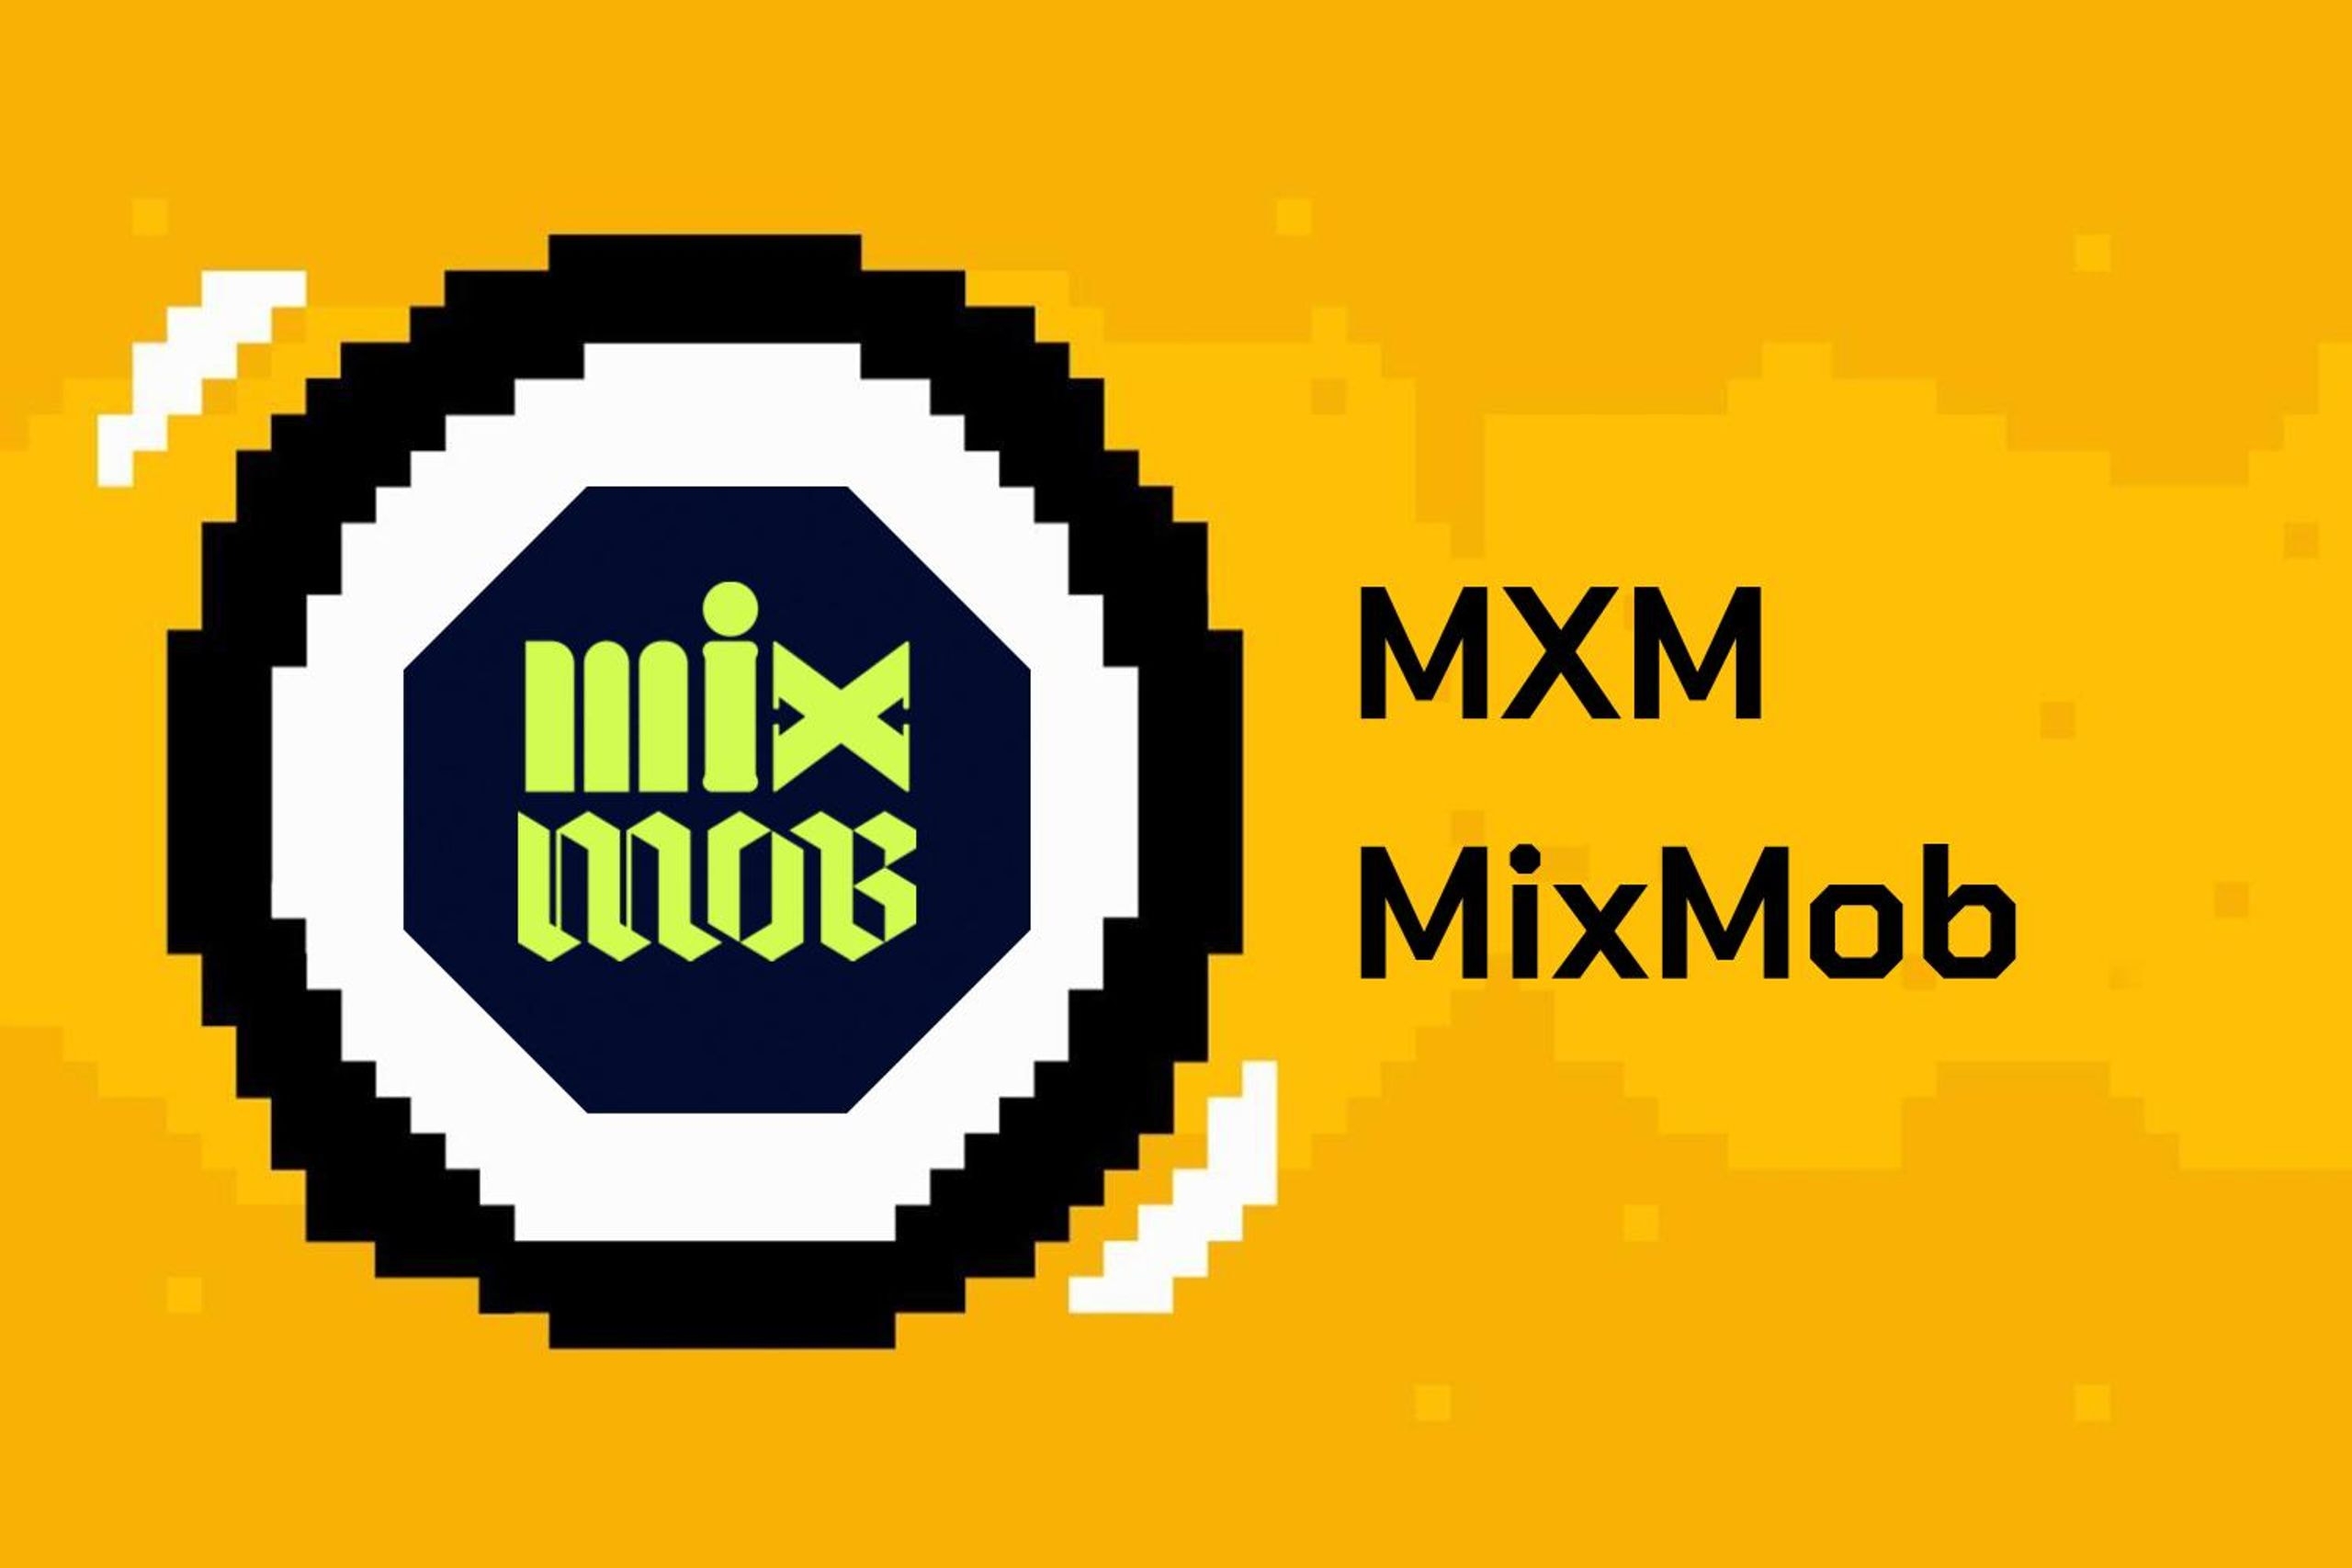 mixmob là gì